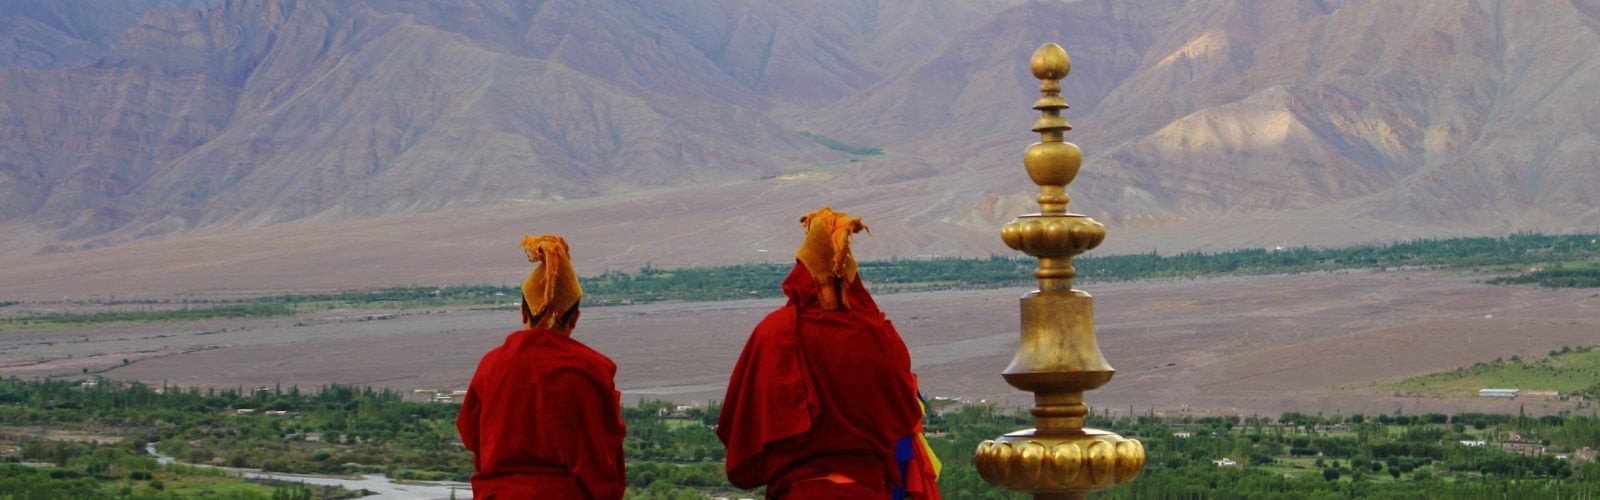 ladakh-monks-and-landscape